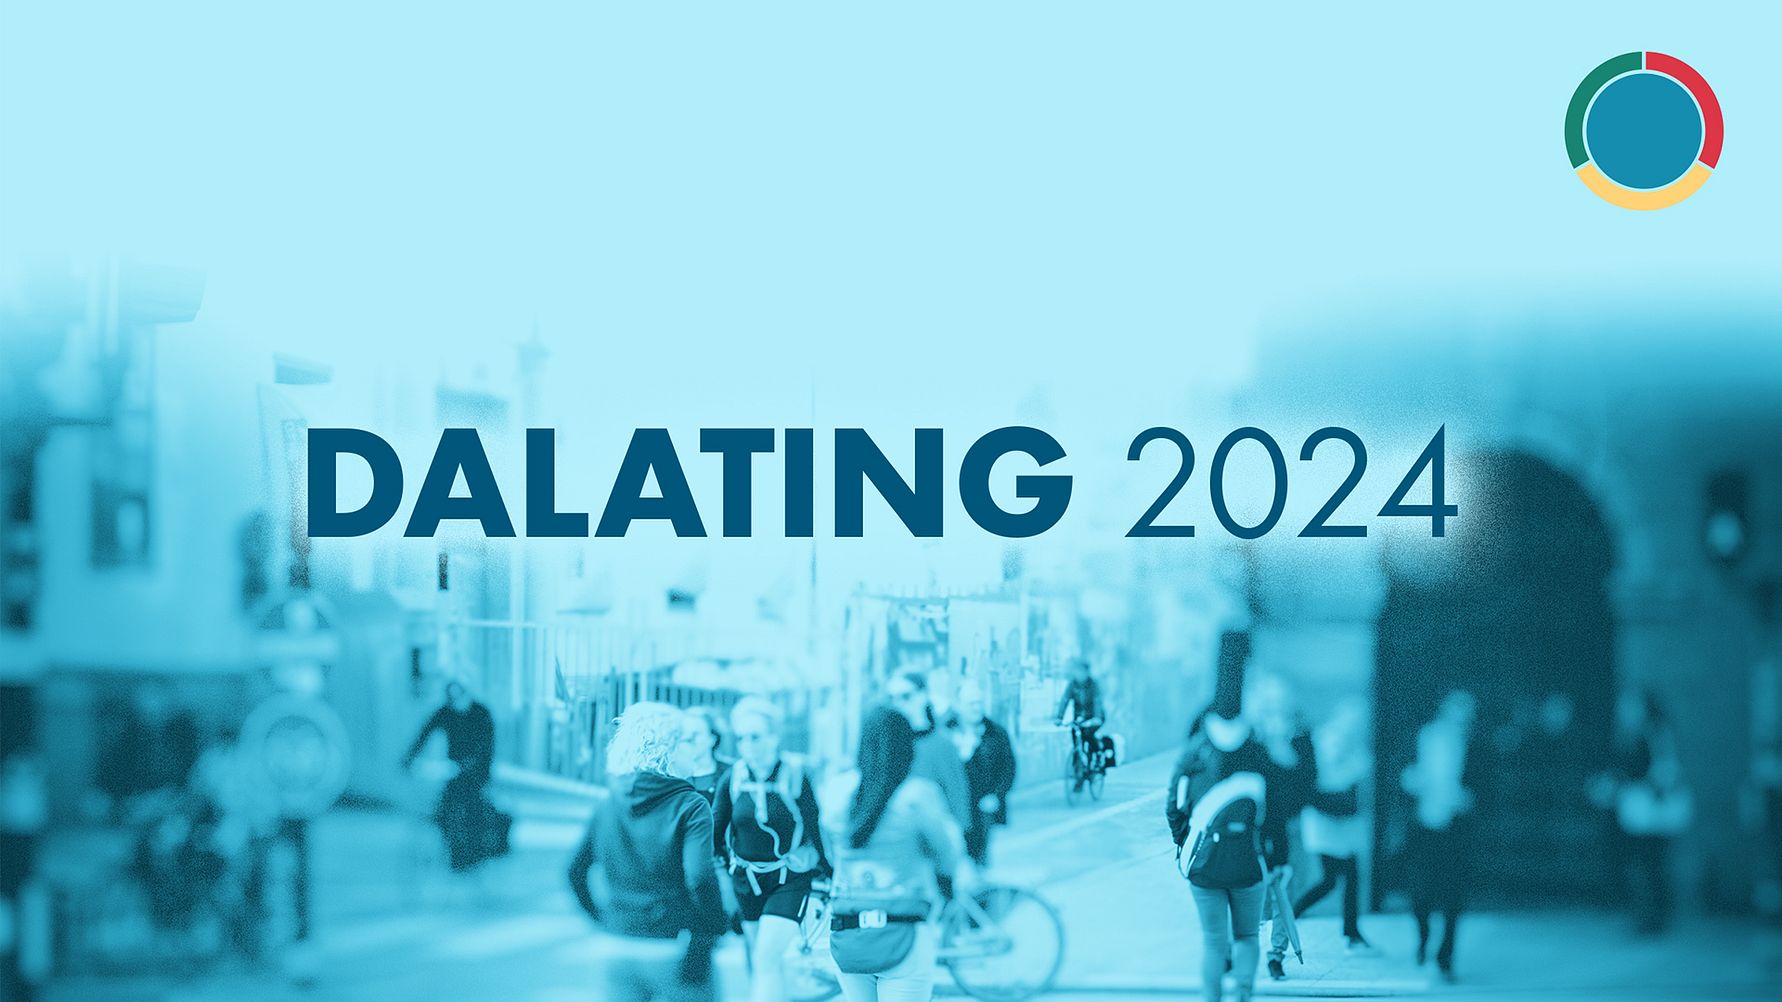 Dalating 2024